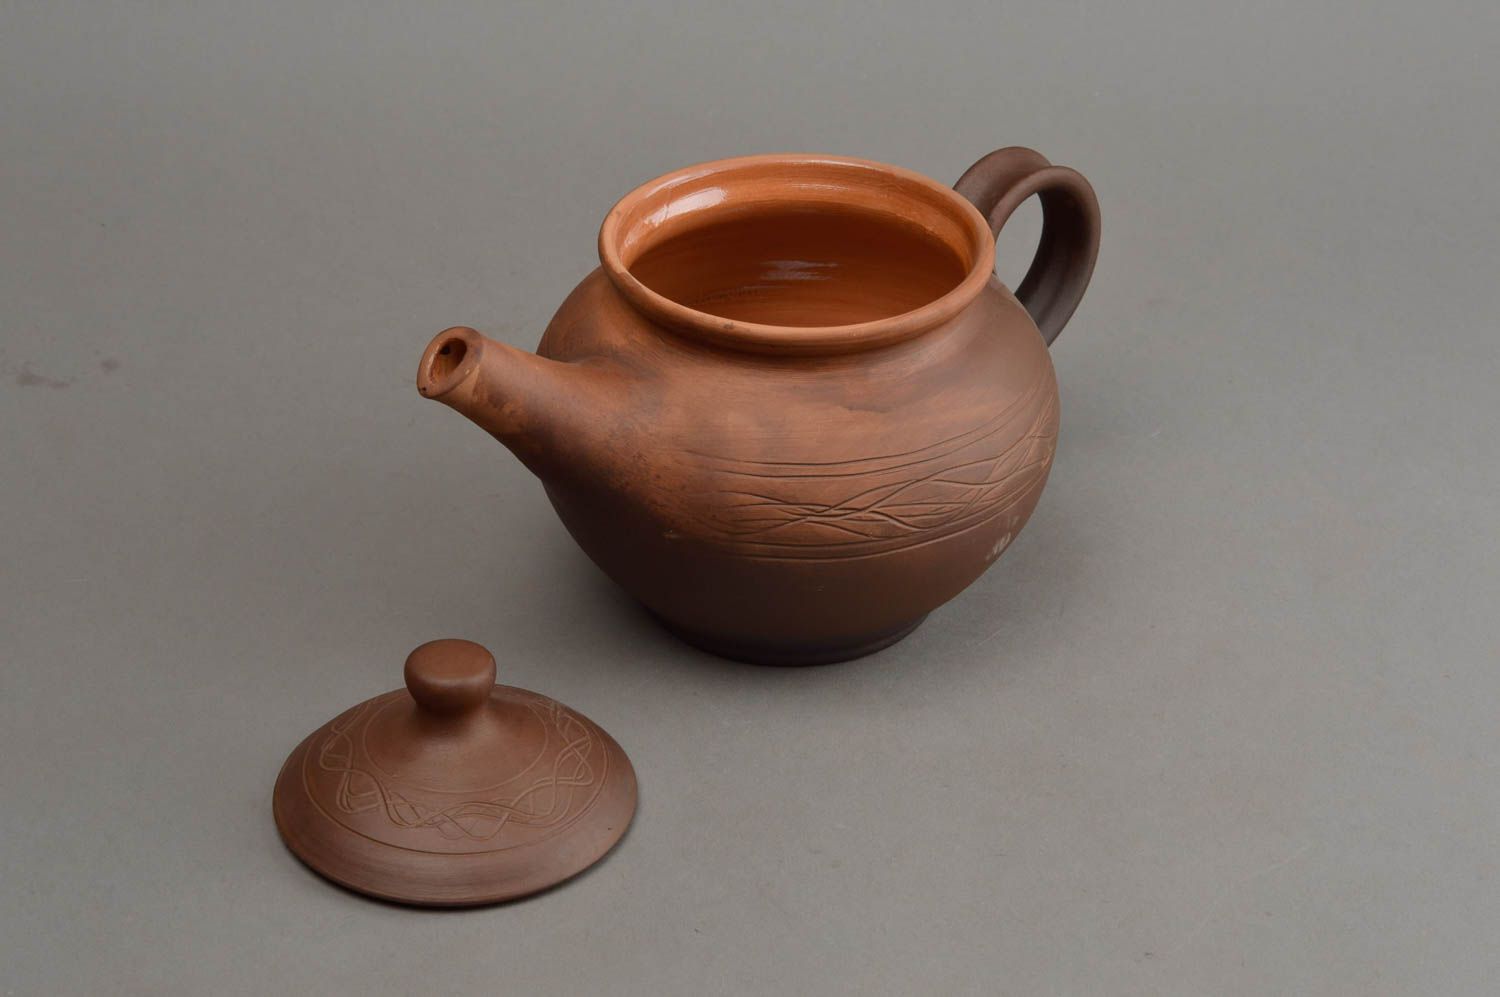 Керамический заварочный чайник с крышкой из красной глины эко посуда хендмейд фото 2